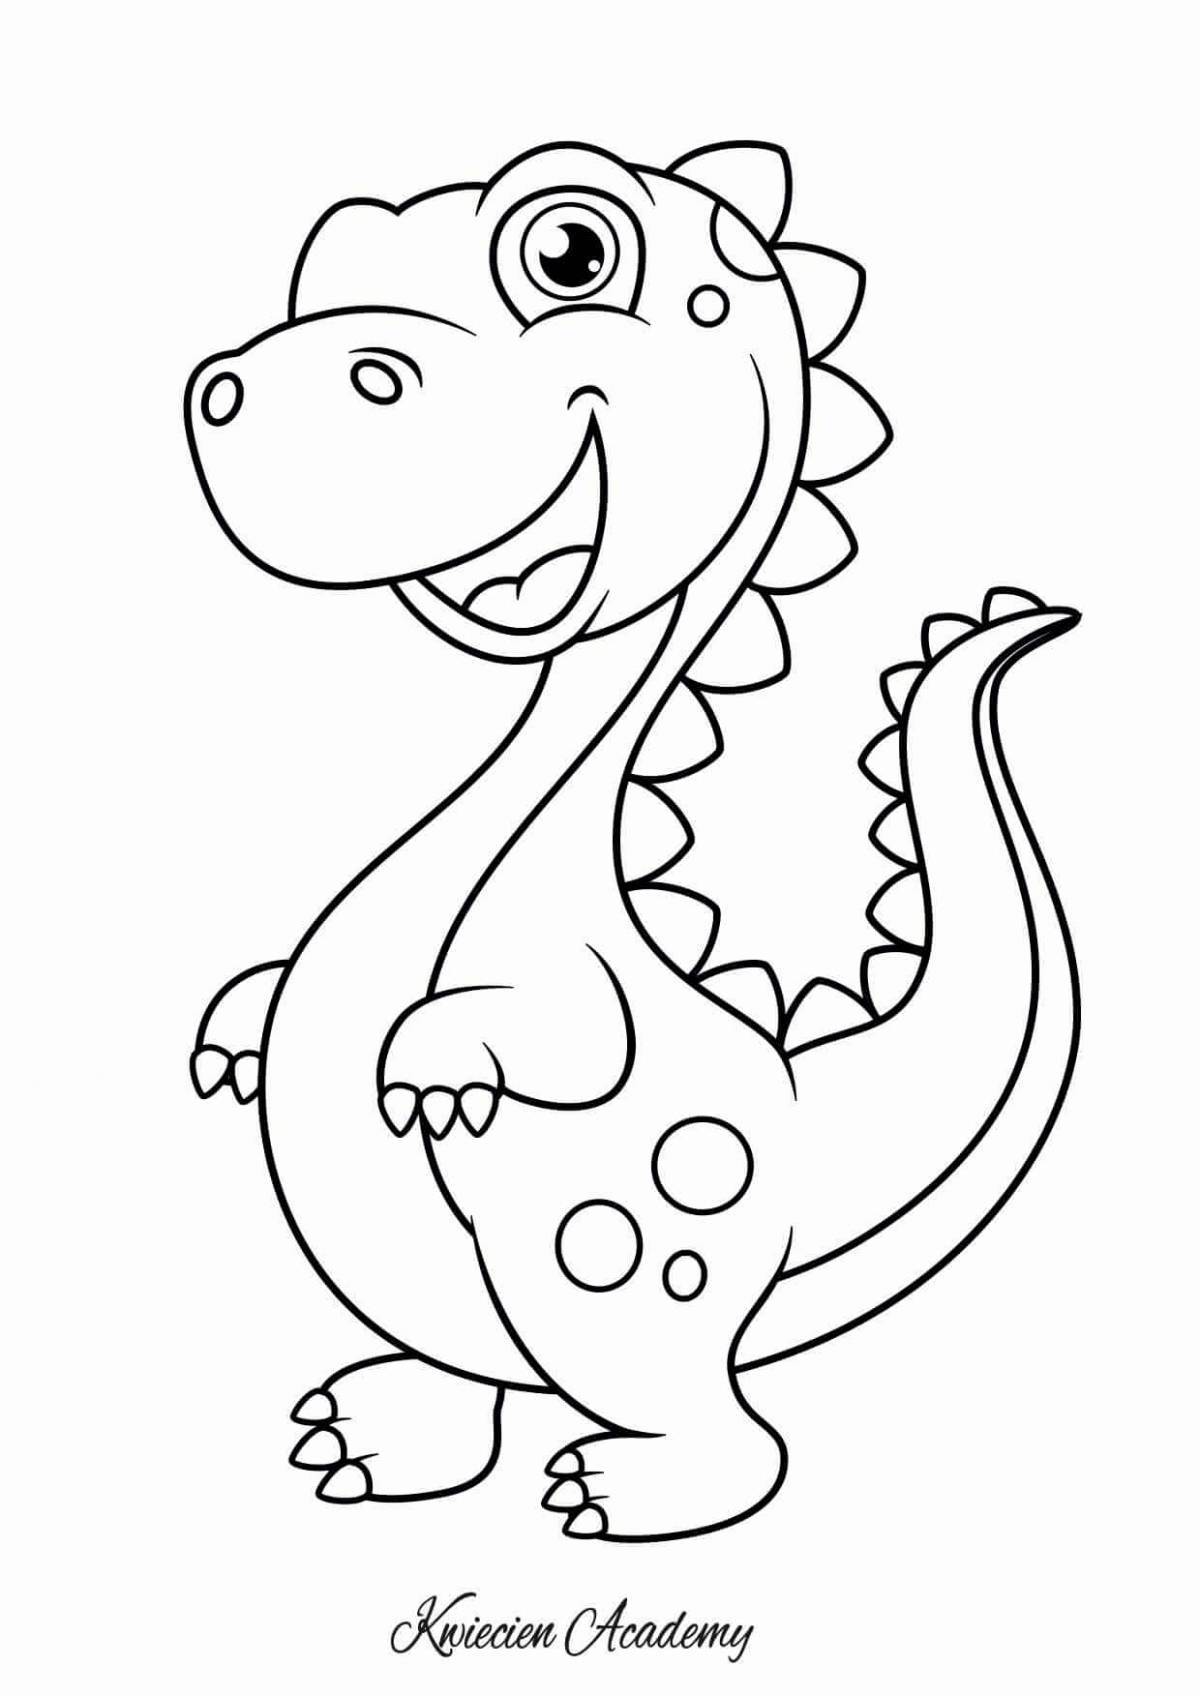 Яркая раскраска динозавров для детей 3-4 лет